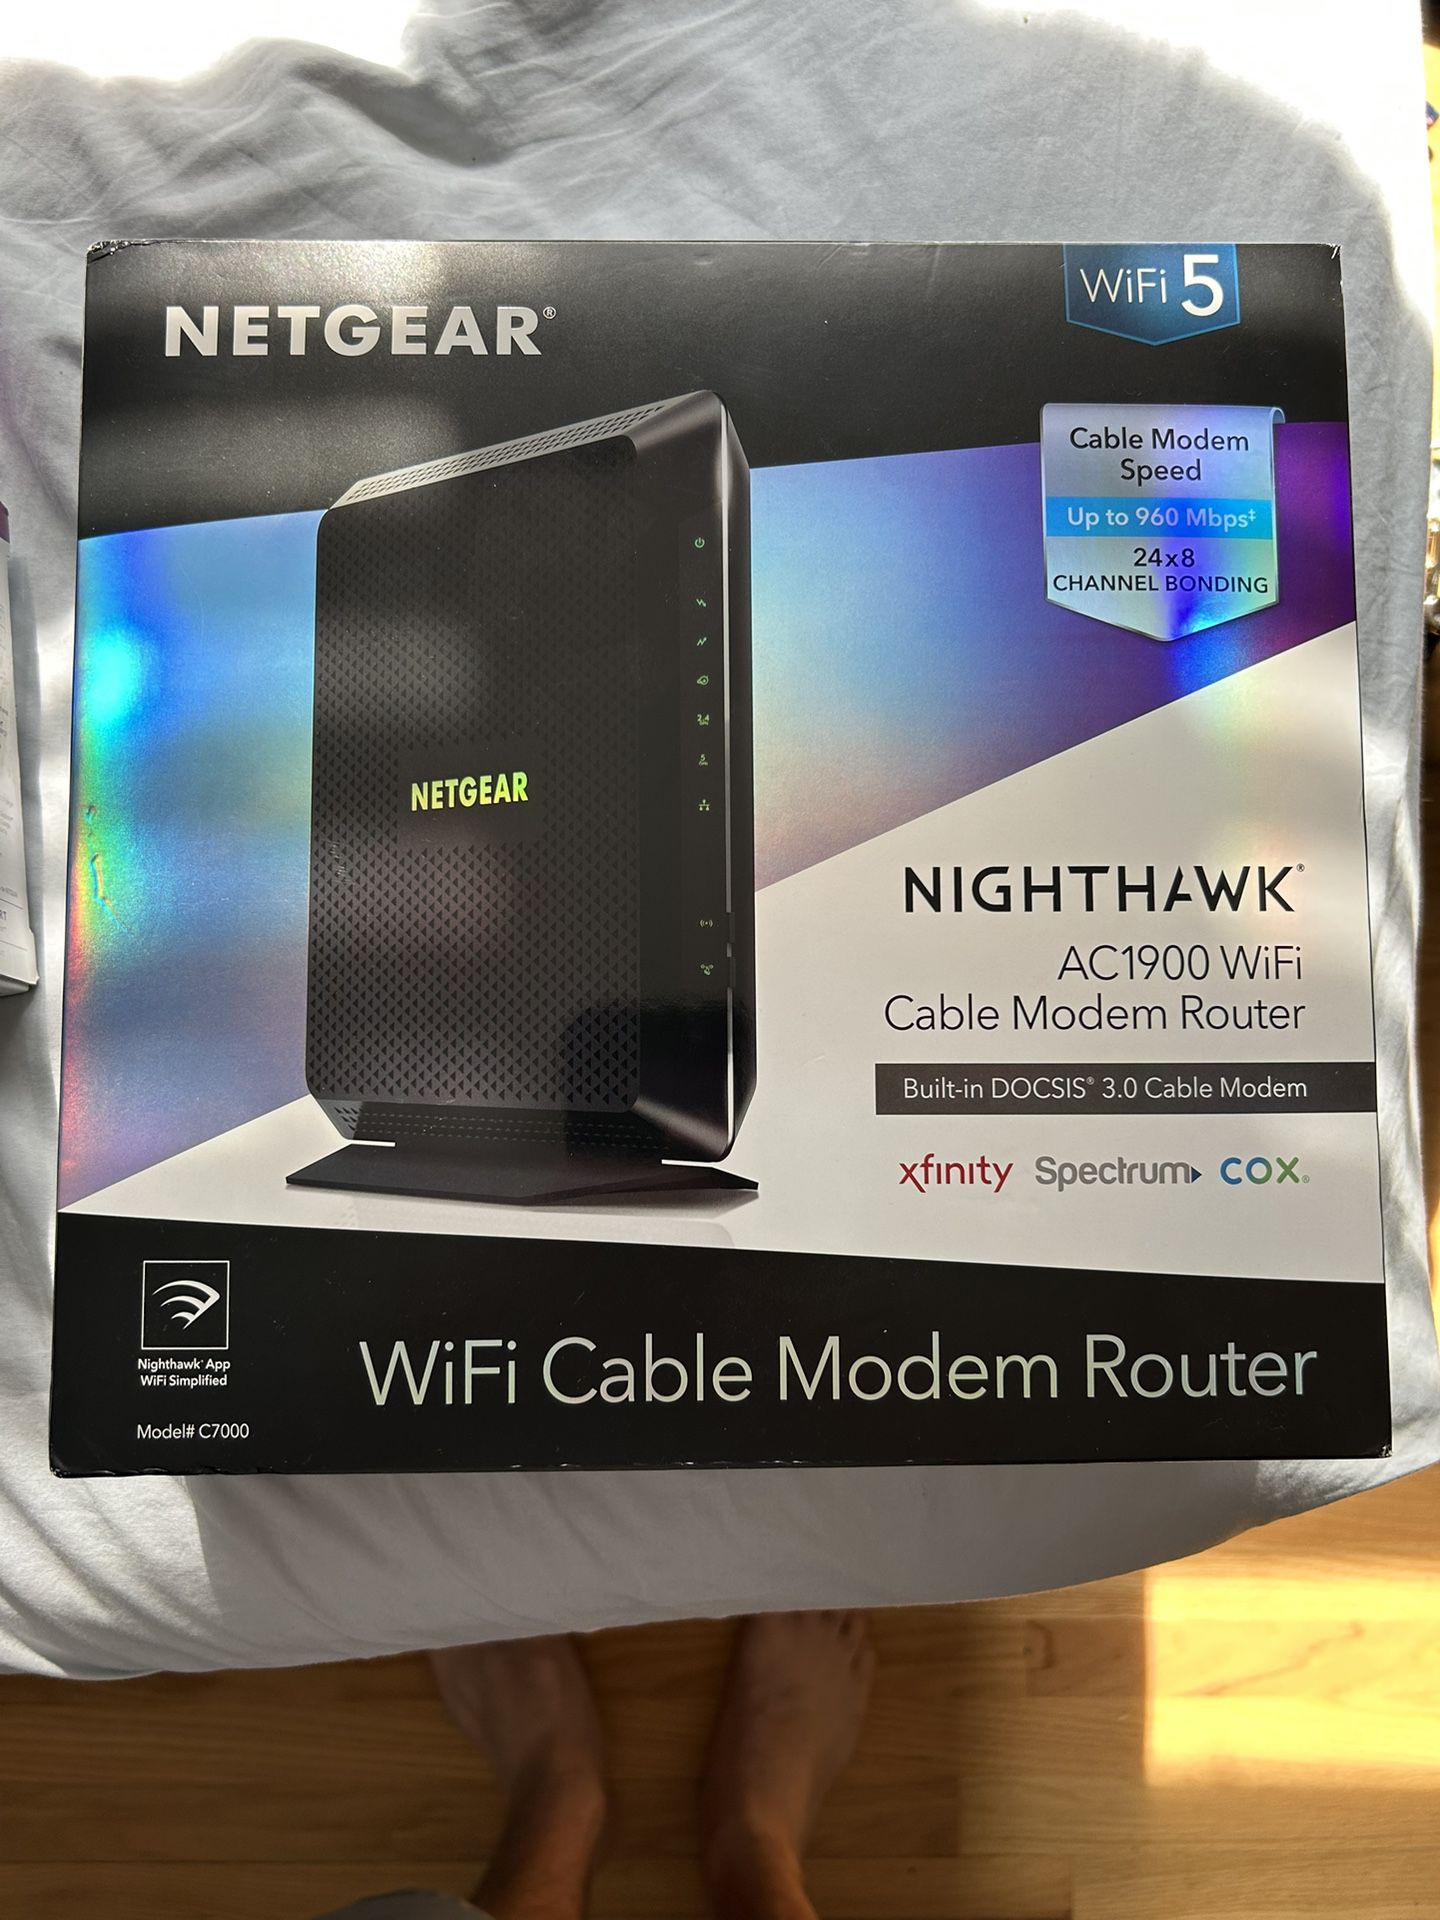 Netgear Gateway - Cable Modem & Router 